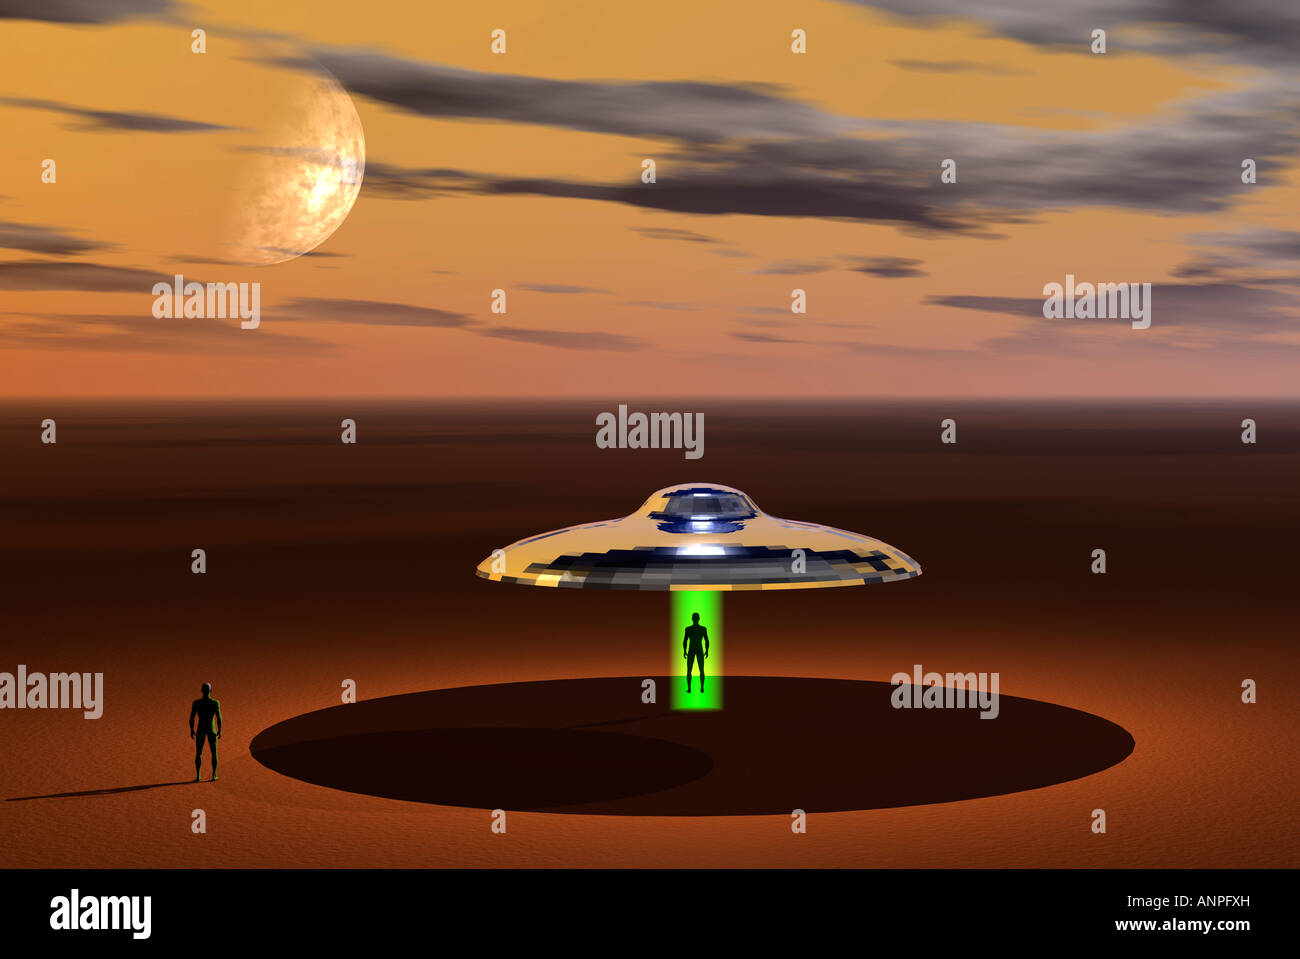 Une image 3D, représentant une soucoupe volante désactiver Chargement ses passagers dans un environnement désertique. Banque D'Images